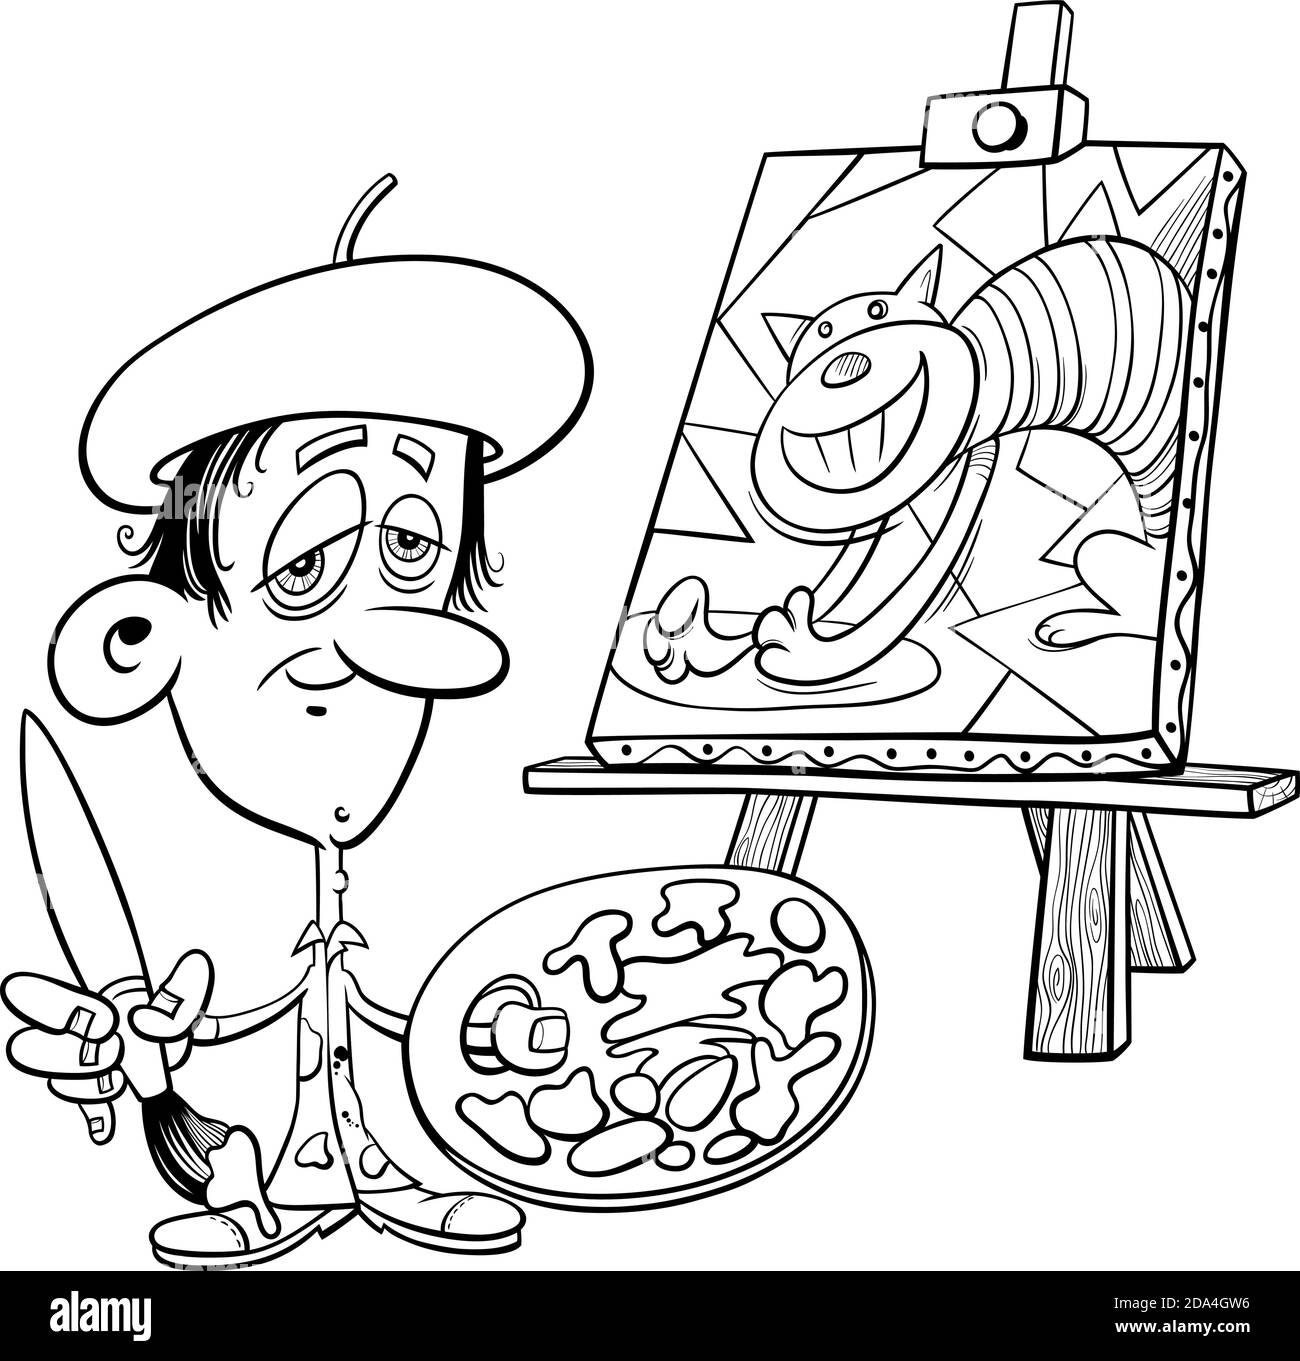 Dessin animé noir et blanc de peintre artiste avec son page de livre de coloriage de peinture Illustration de Vecteur